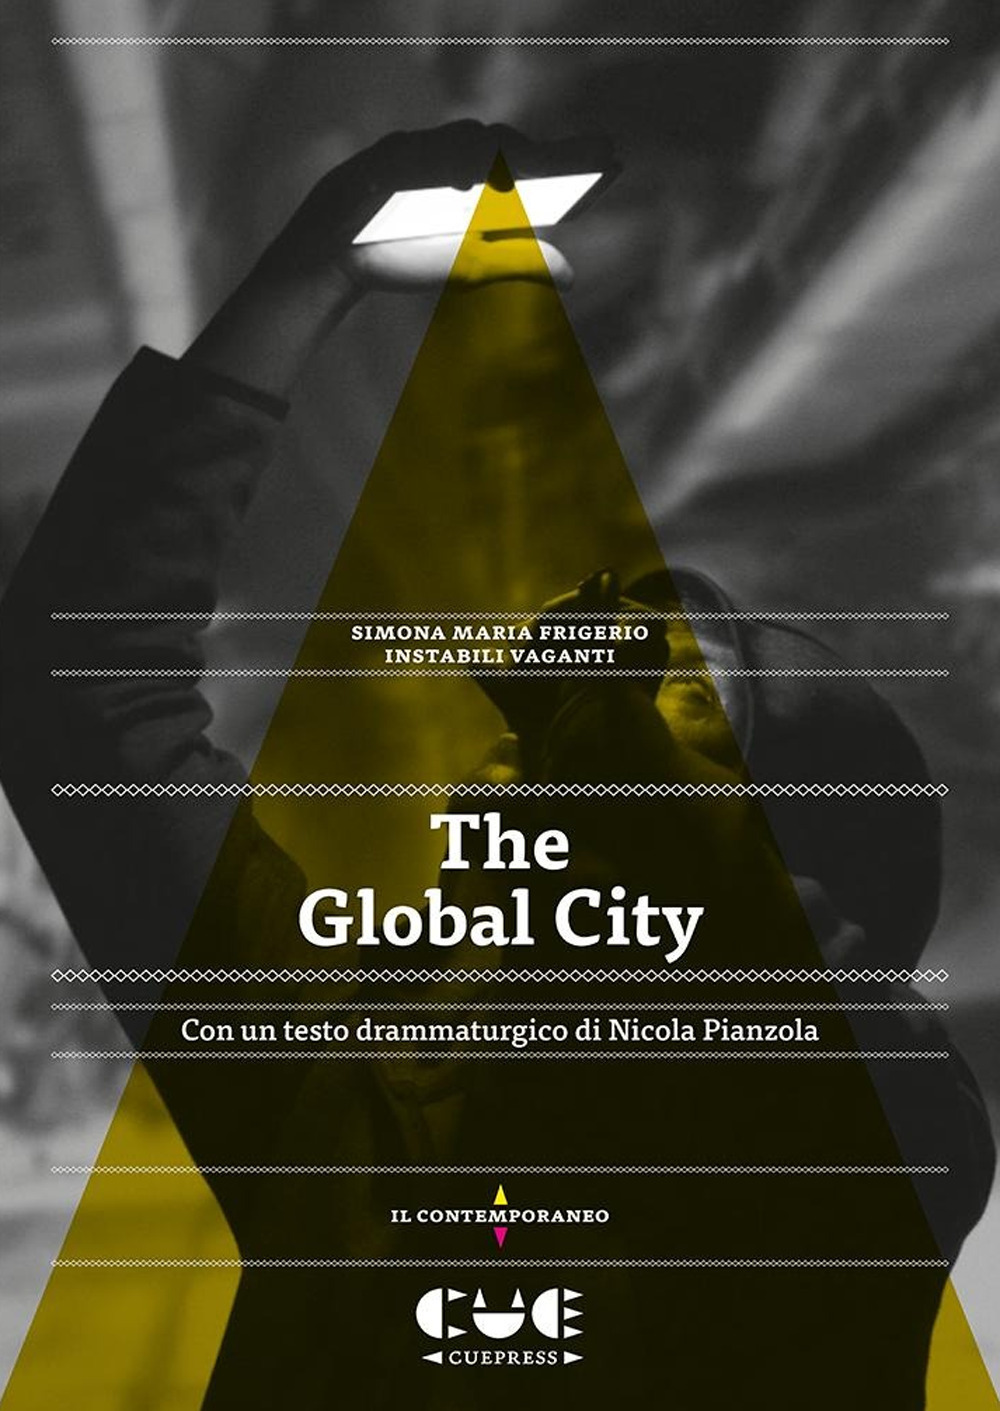 Libri Instabili Vaganti / Frigerio Simona Maria / Nicola Pianzola - The Global City NUOVO SIGILLATO, EDIZIONE DEL 04/11/2020 SUBITO DISPONIBILE